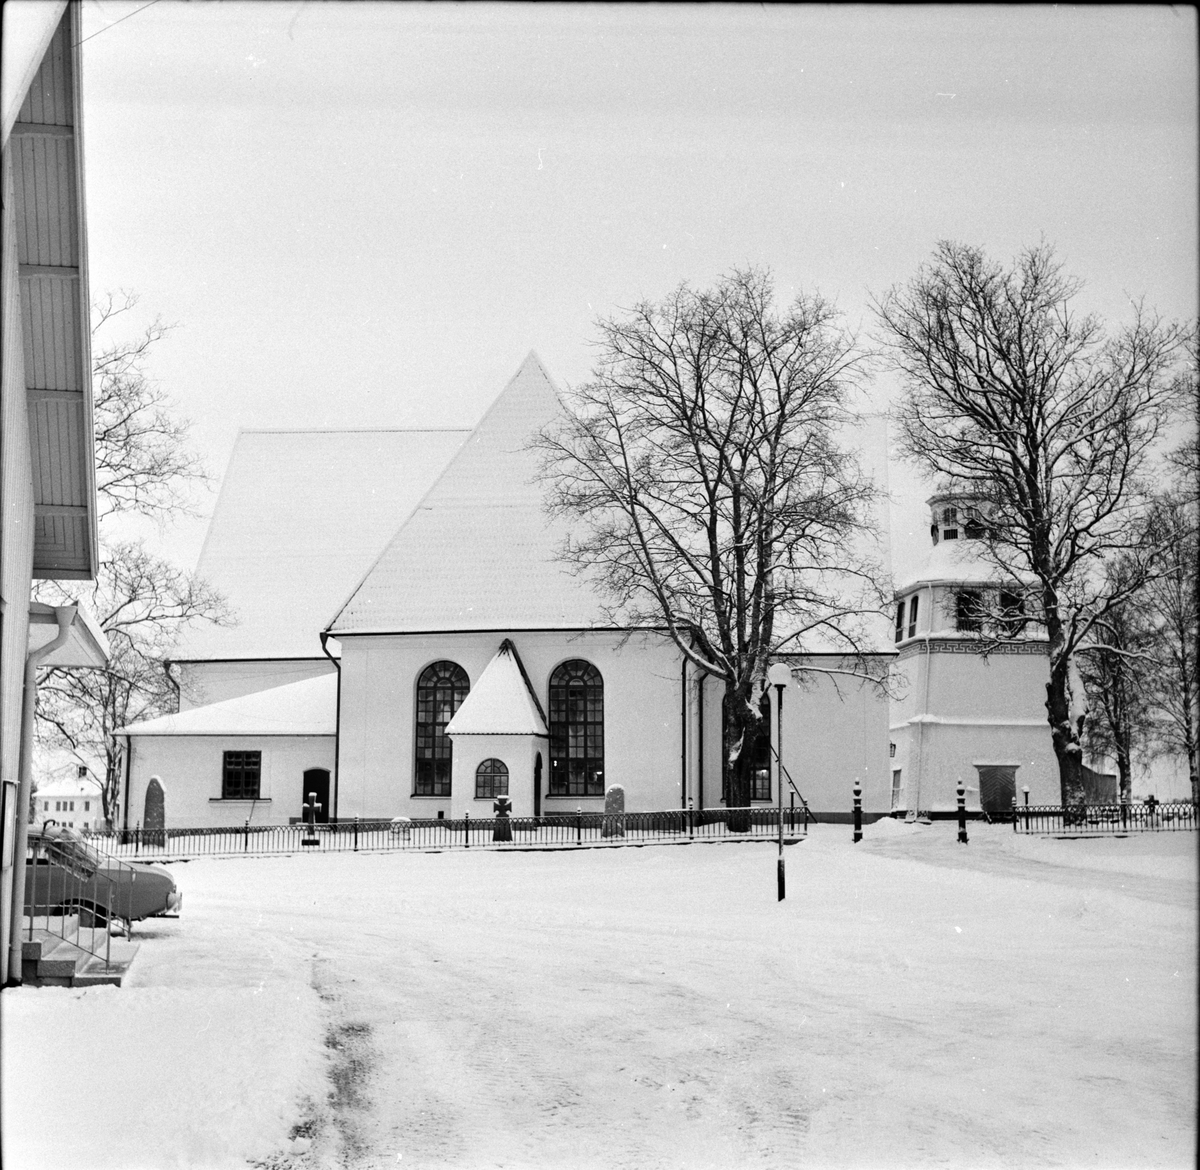 Arbrå,
Kyrkan,
Vinterbild,
22 December 1967